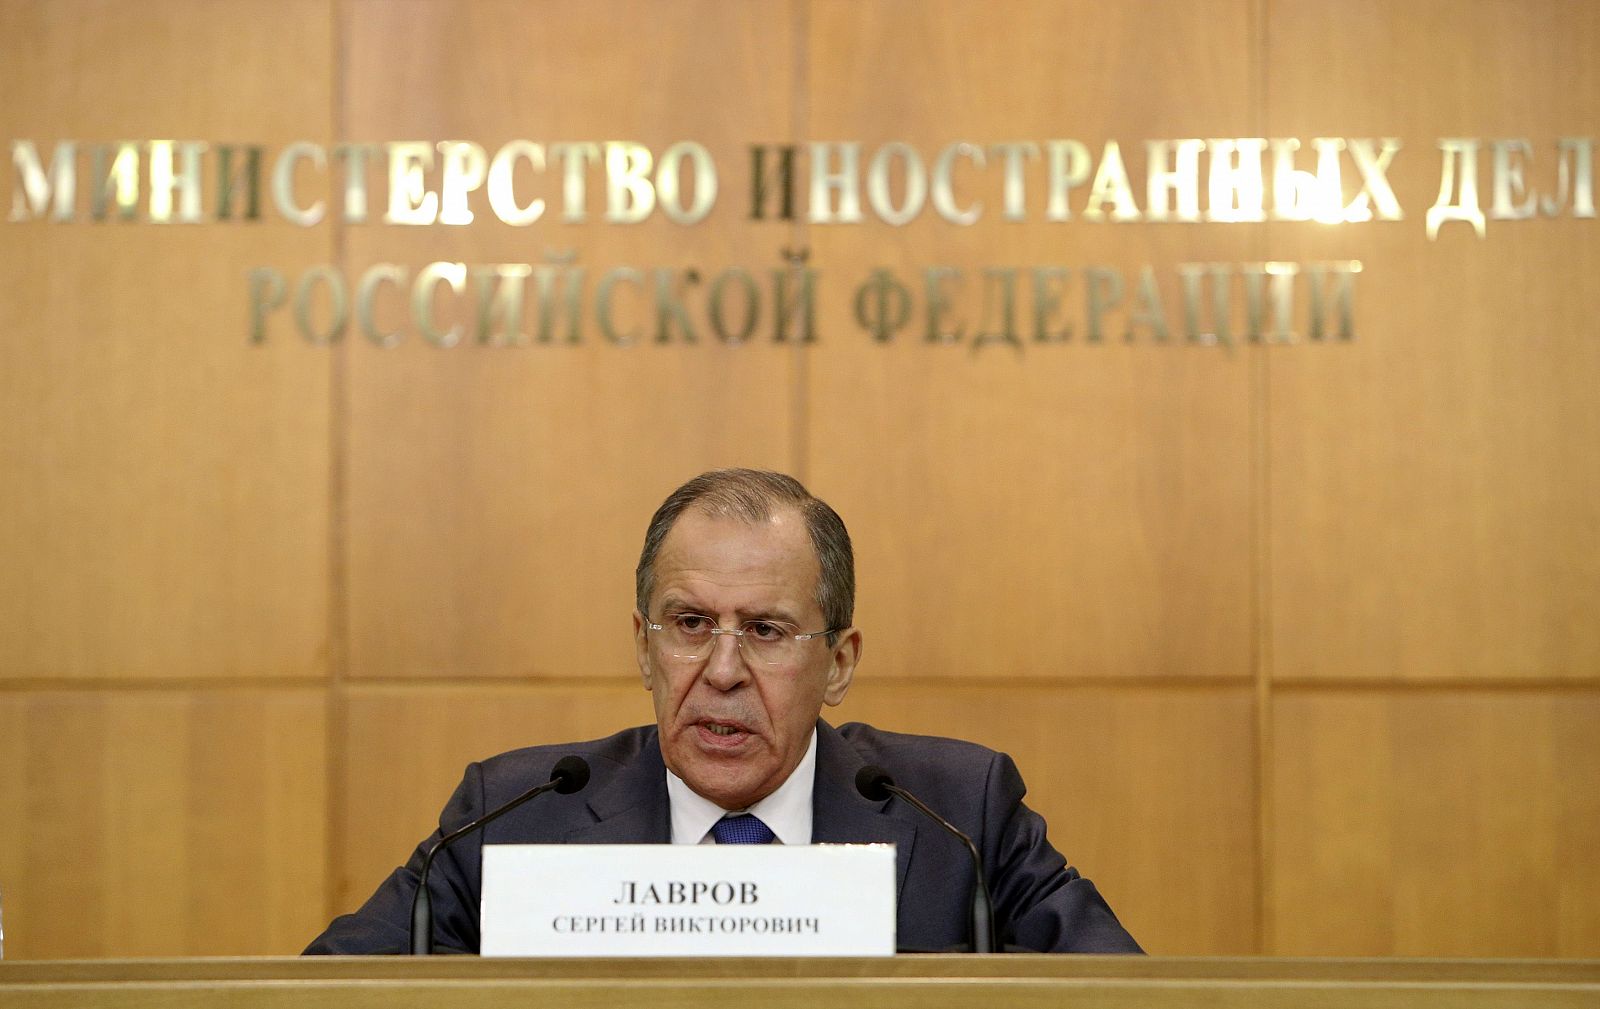 El ministro ruso de Exteriores, Serguei Lavrov, en la rueda de prensa en Moscú en la que ha hablado sobre Siria